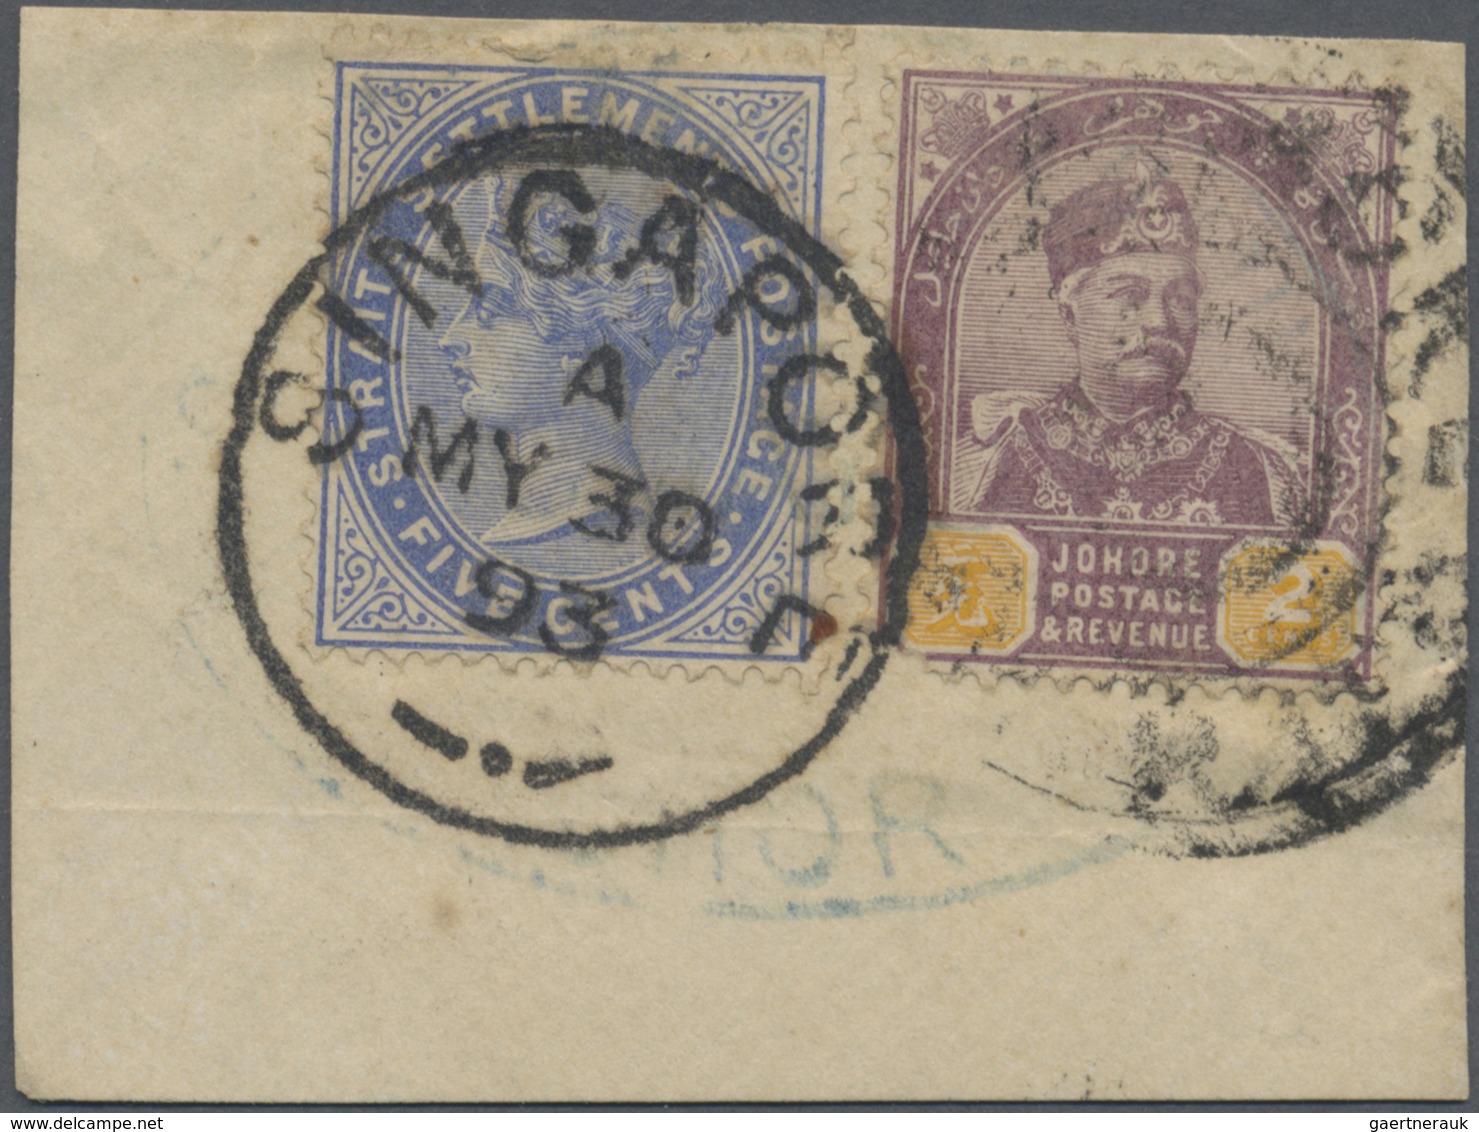 Brfst Malaiische Staaten - Johor: 1893 Small Piece Bearing Johore 1891-94 2c. (local Rate 1891-1894) Tied - Johore